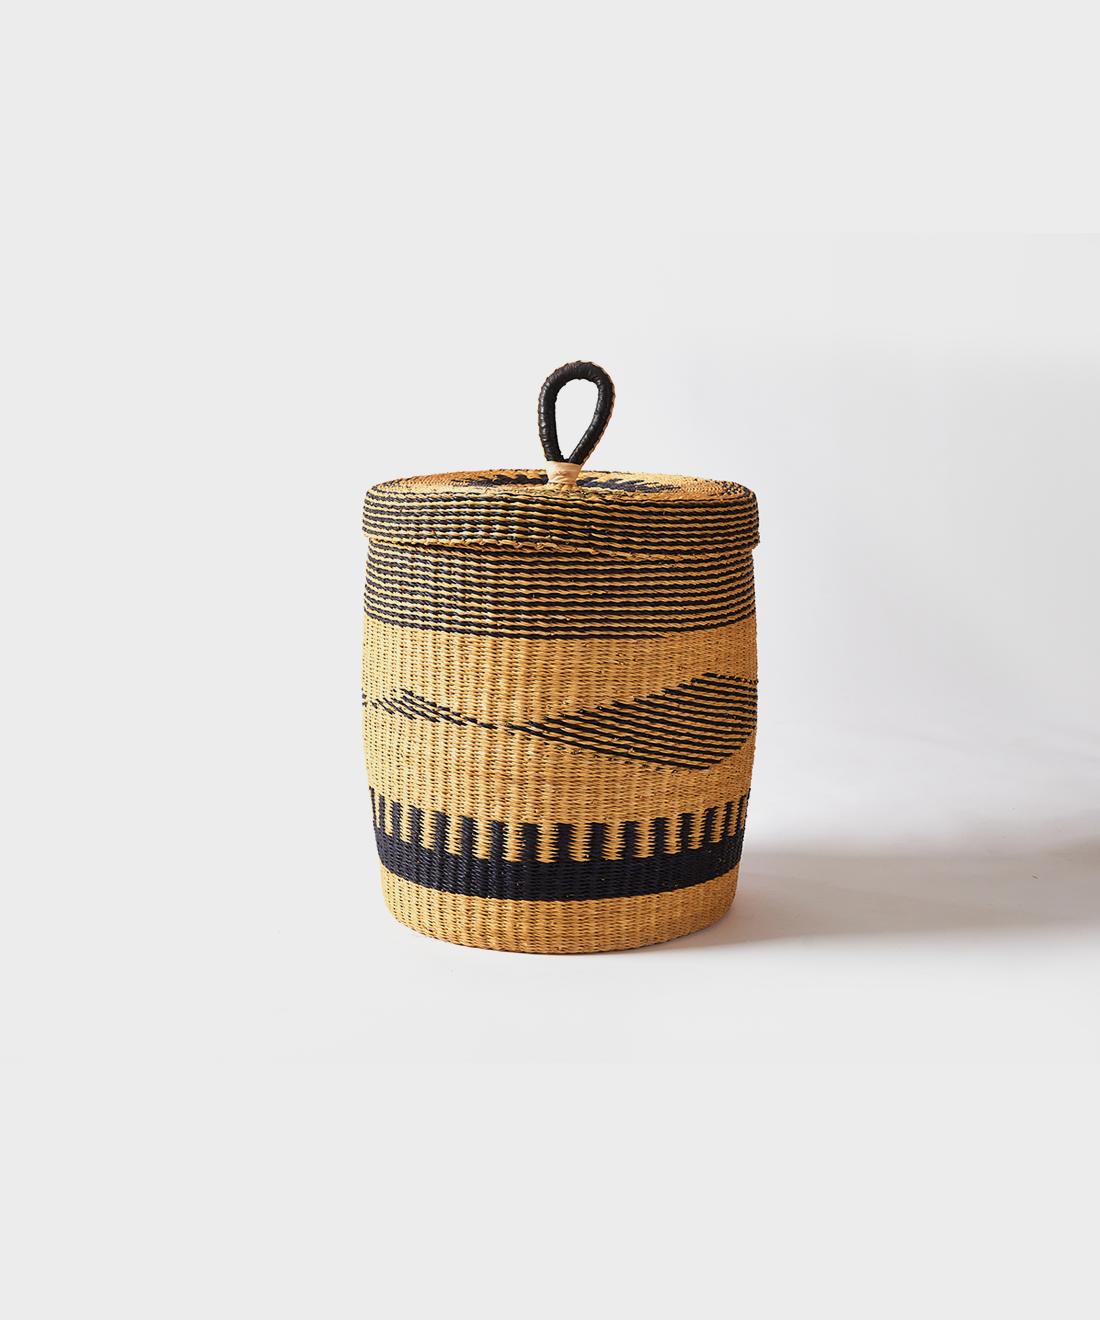 Baba Laundry/Log Basket Small, 10